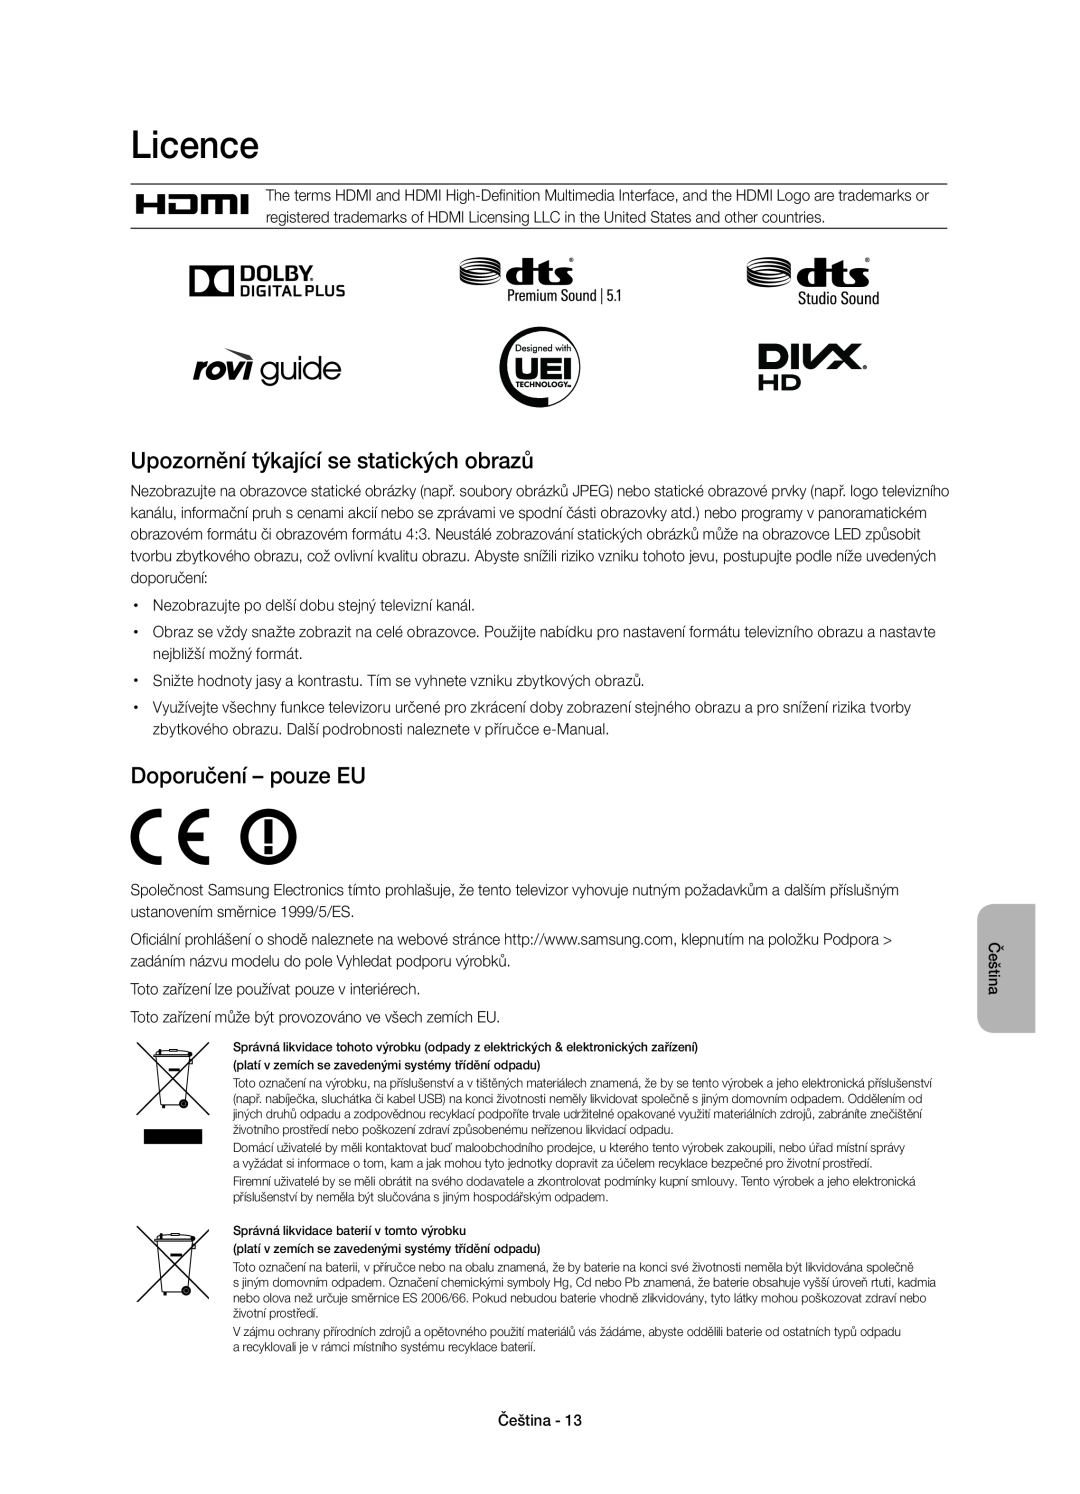 Samsung UE55H6670SLXZF, UE55H6700SLXXH manual Upozornění týkající se statických obrazů, Doporučení - pouze EU, Licence 